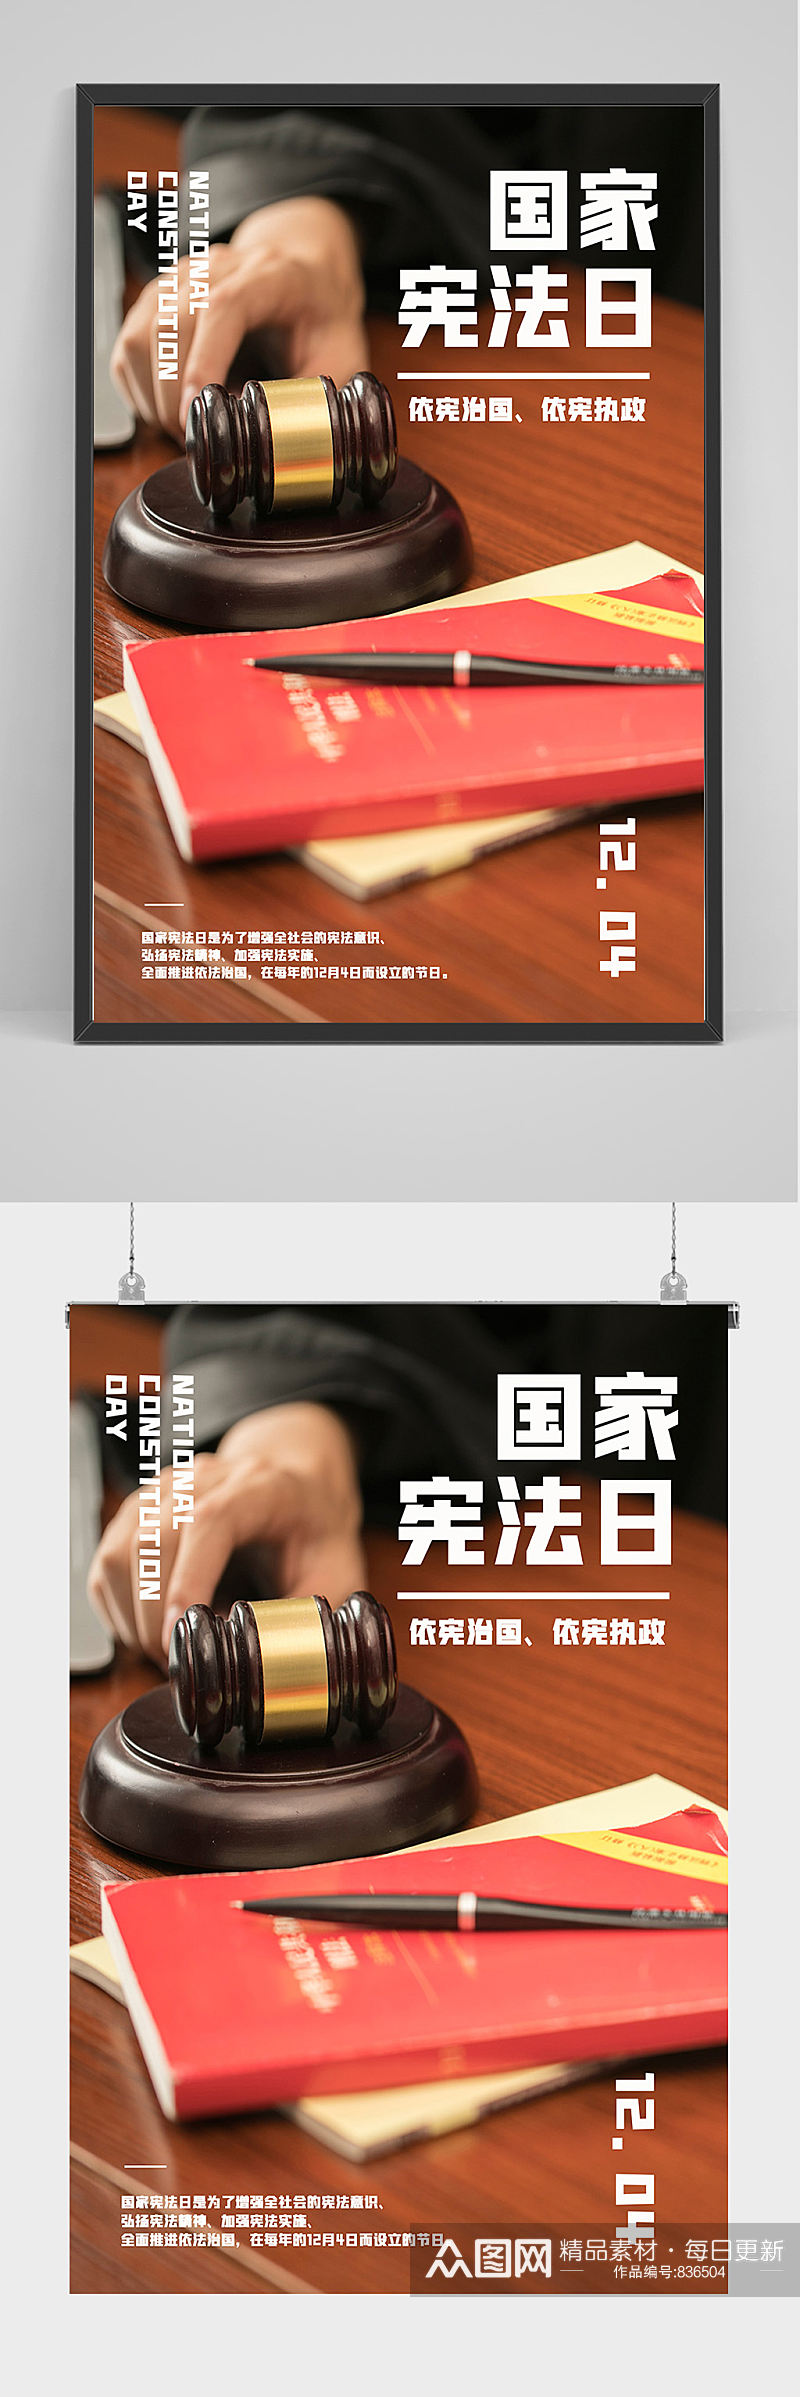 国家宪法日海报设计素材